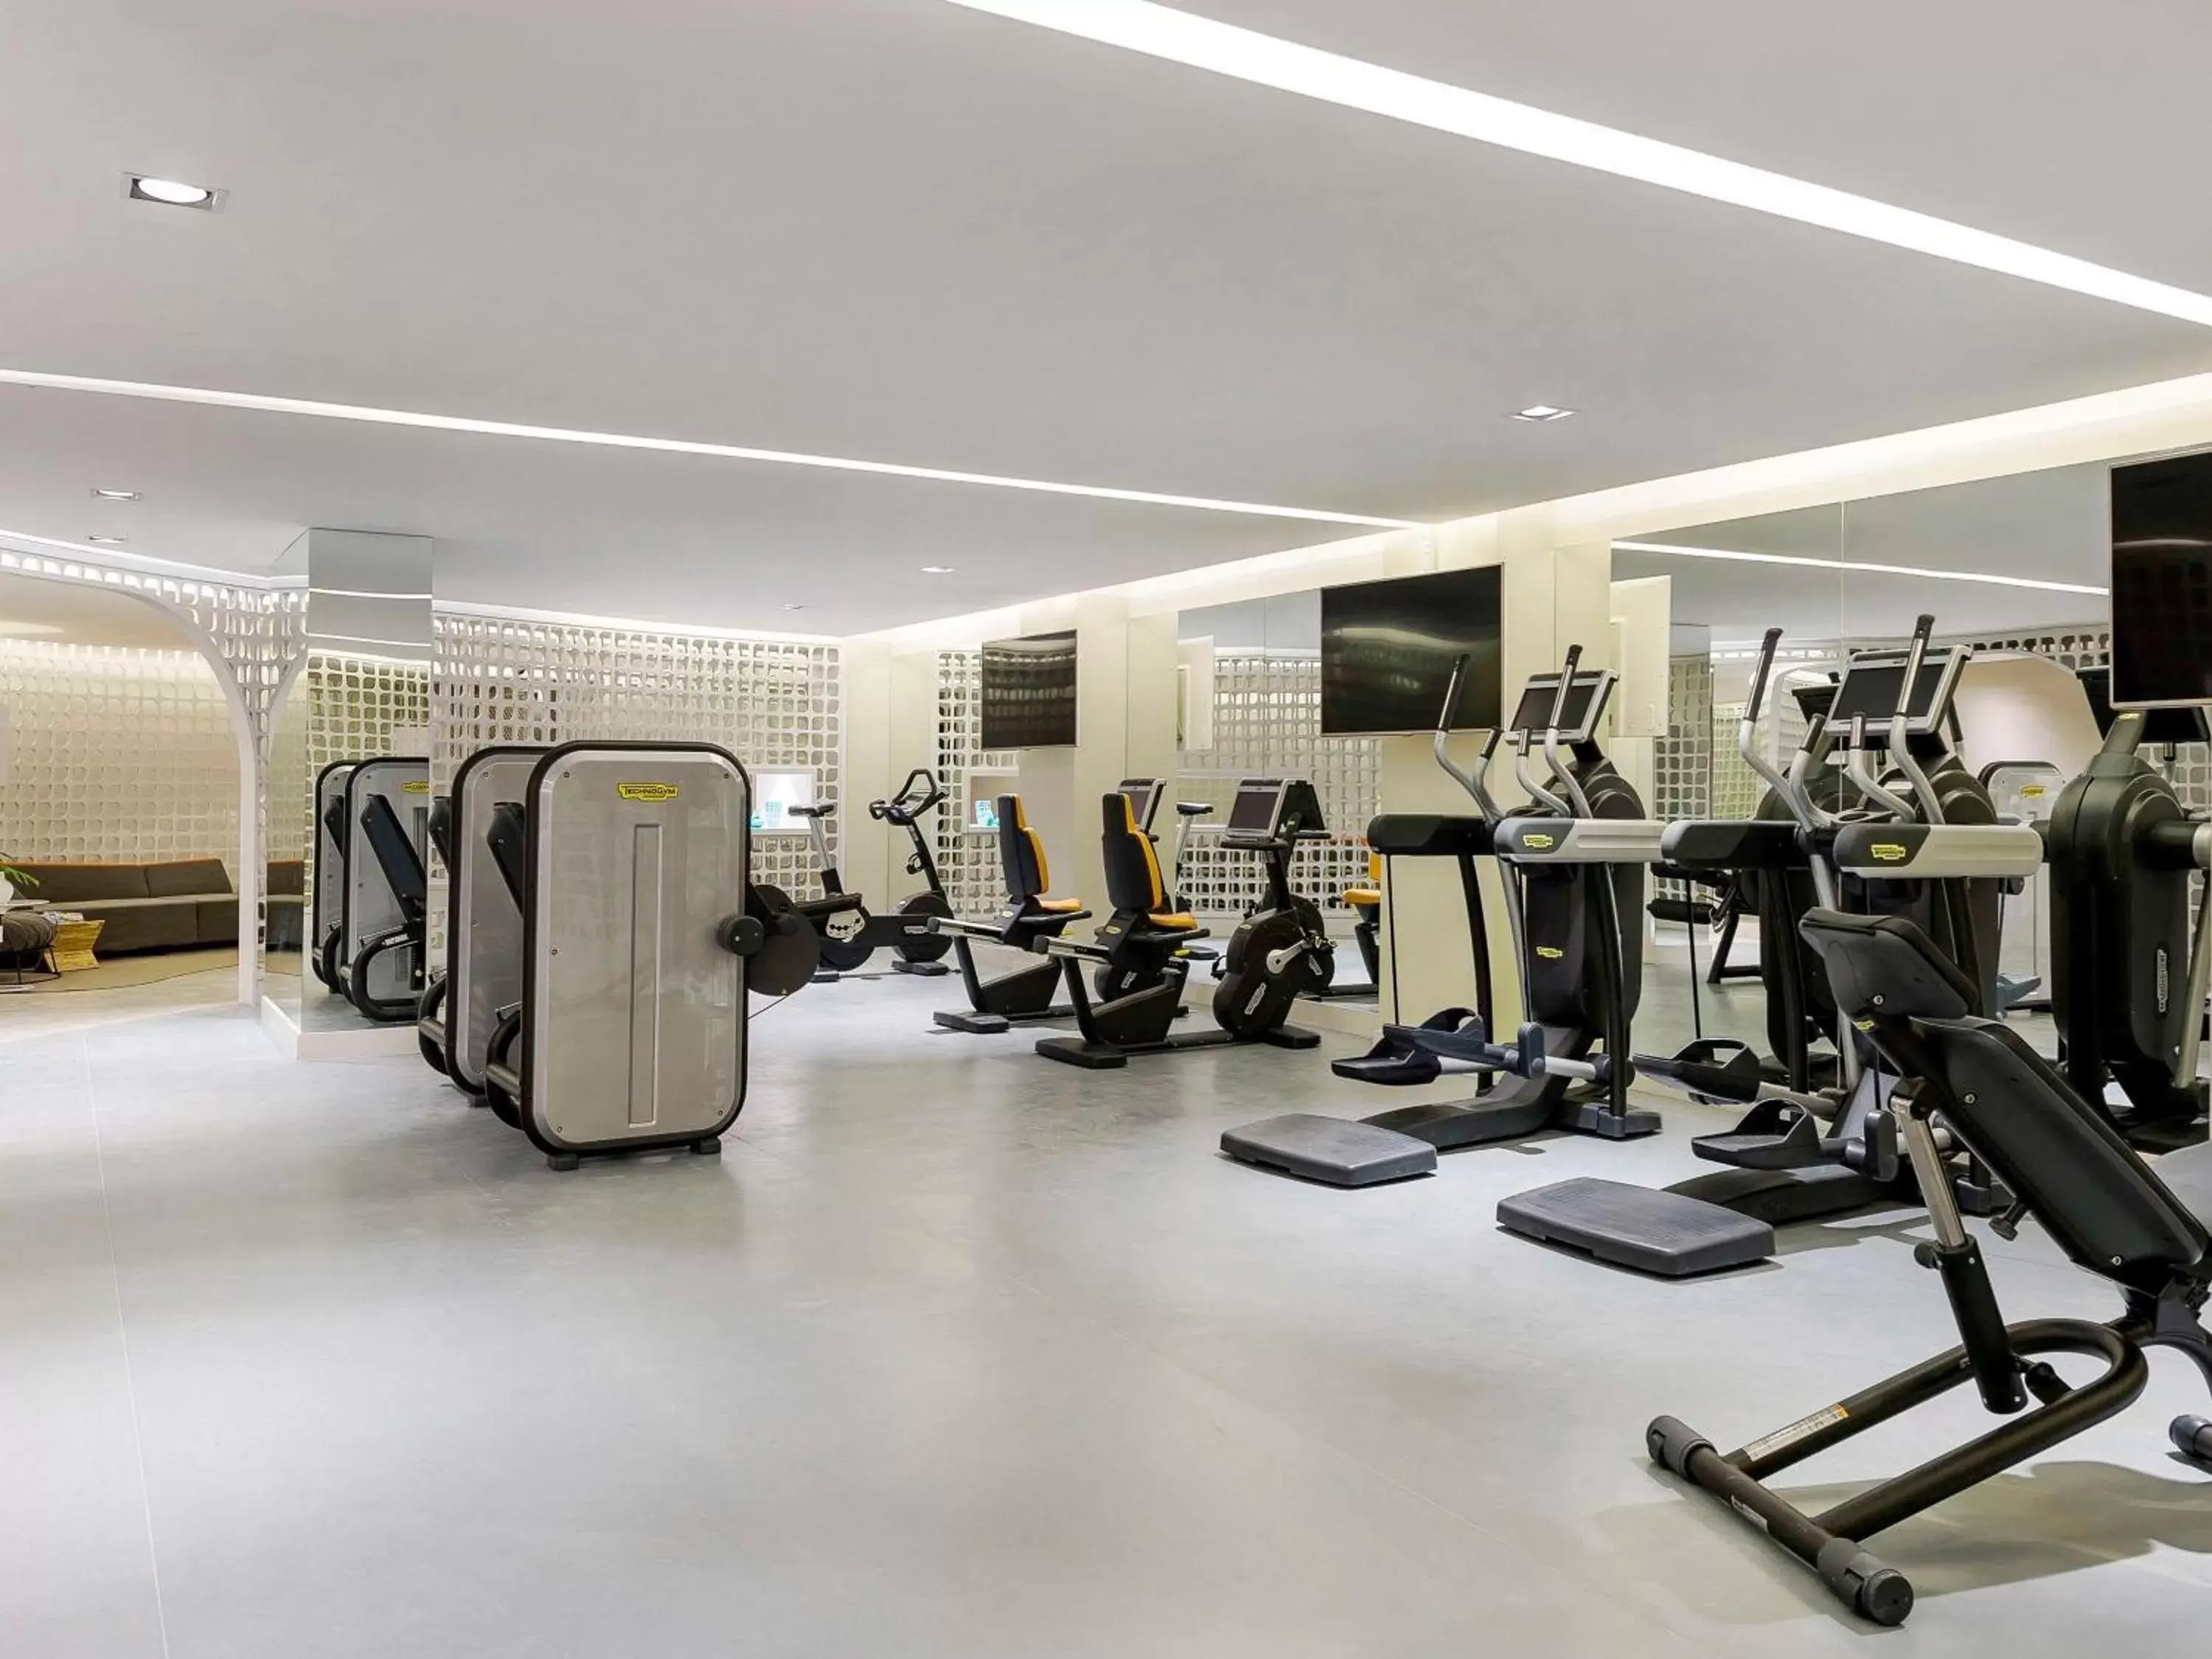 Fitness centre/facilities, Fitness Center/Facilities in Fairmont Rio de Janeiro Copacabana